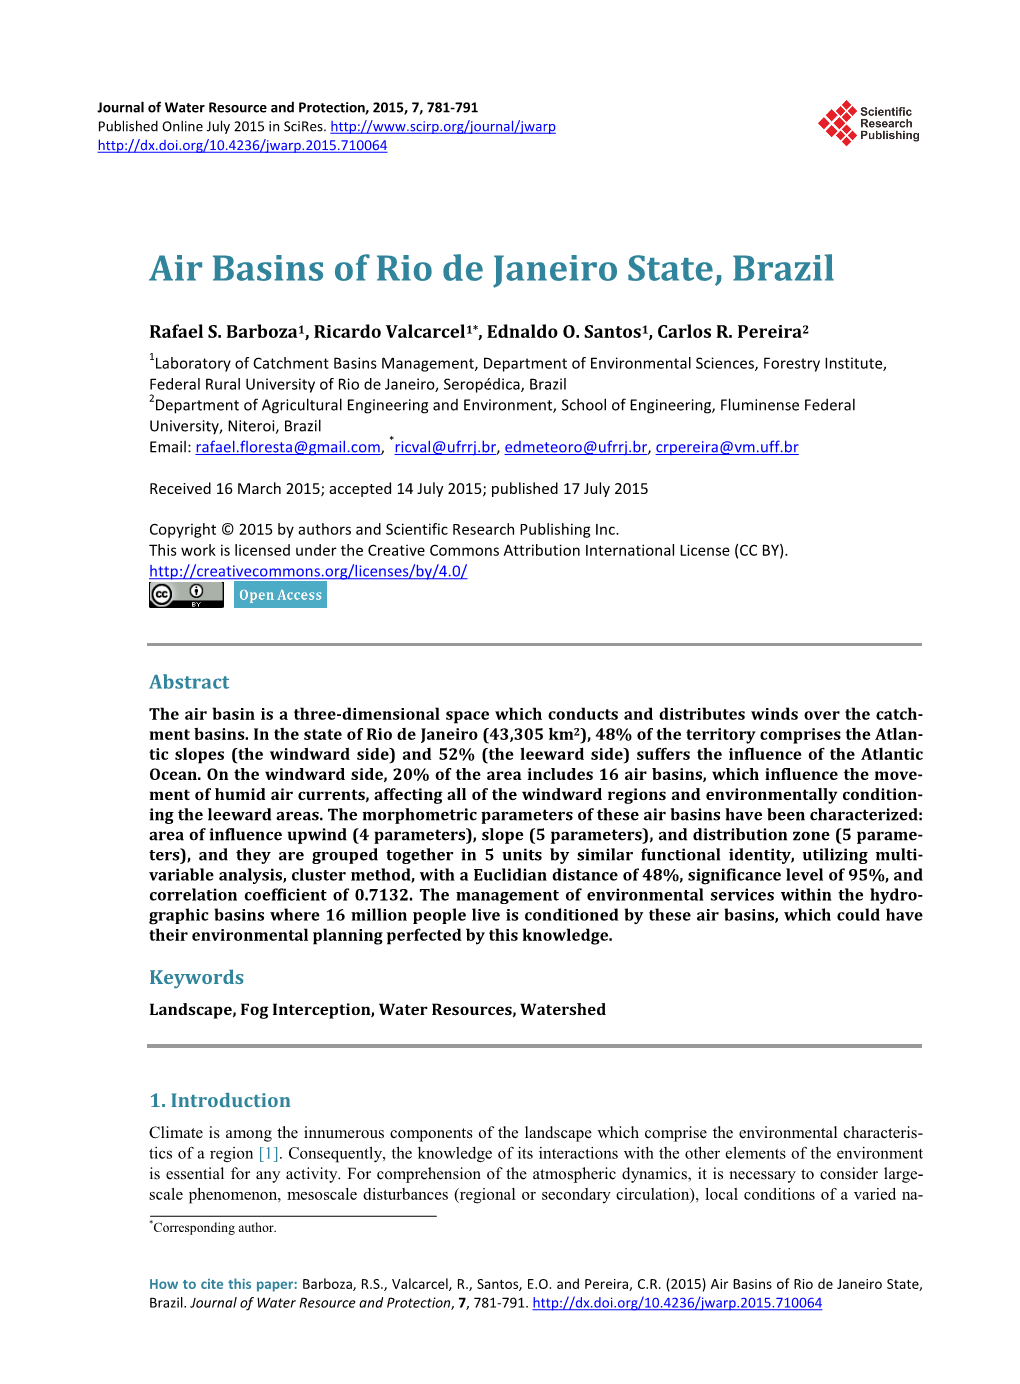 Air Basins of Rio De Janeiro State, Brazil